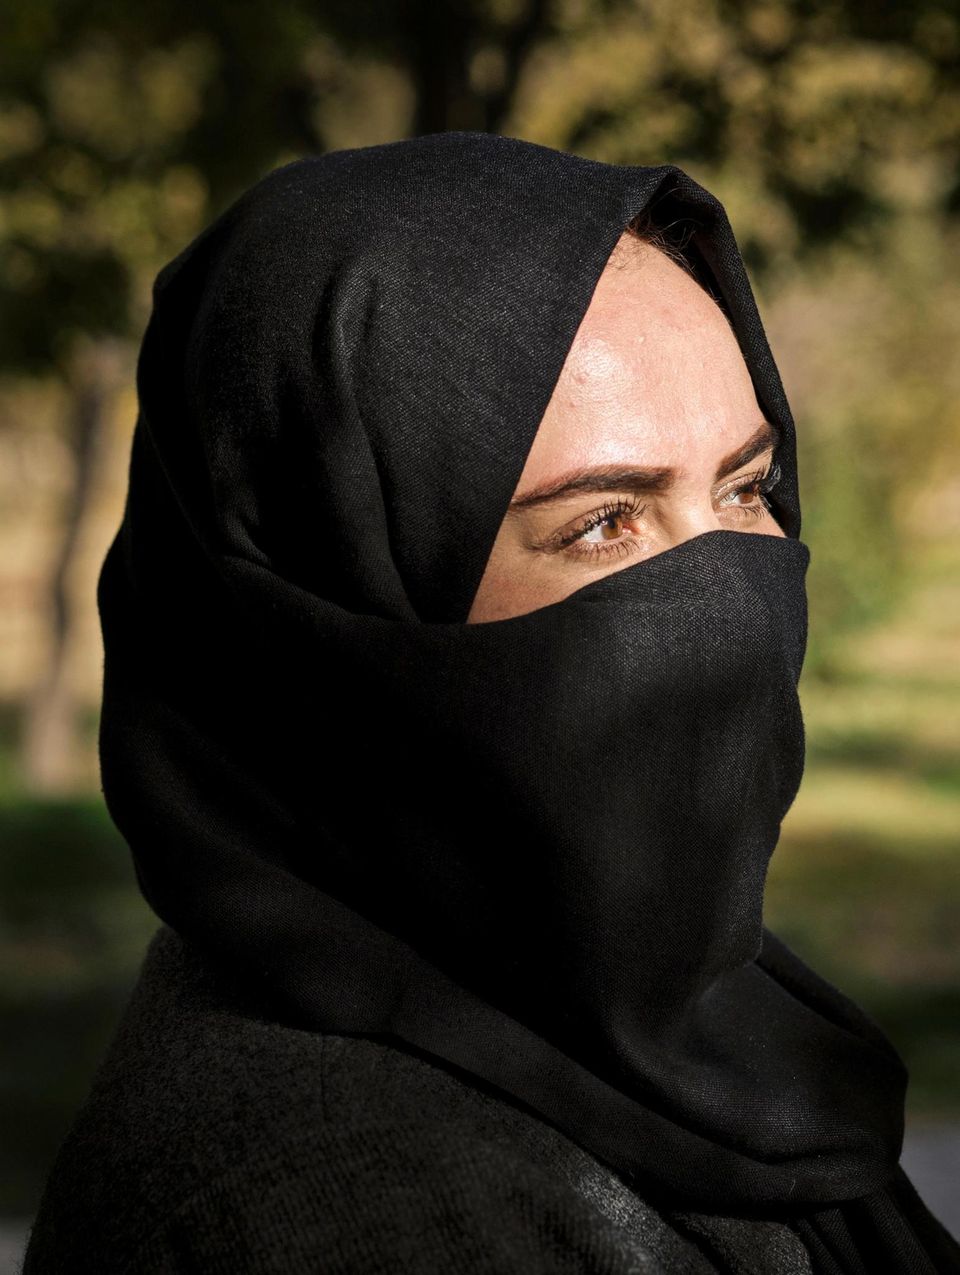 SIE:  Hamida Nuri, 27, hat Islamisches Recht studiert und arbeitet bei einer Hilfsorganisation für afghanische Frauen in Not. 2019 ermordeten Taliban ihren Vater